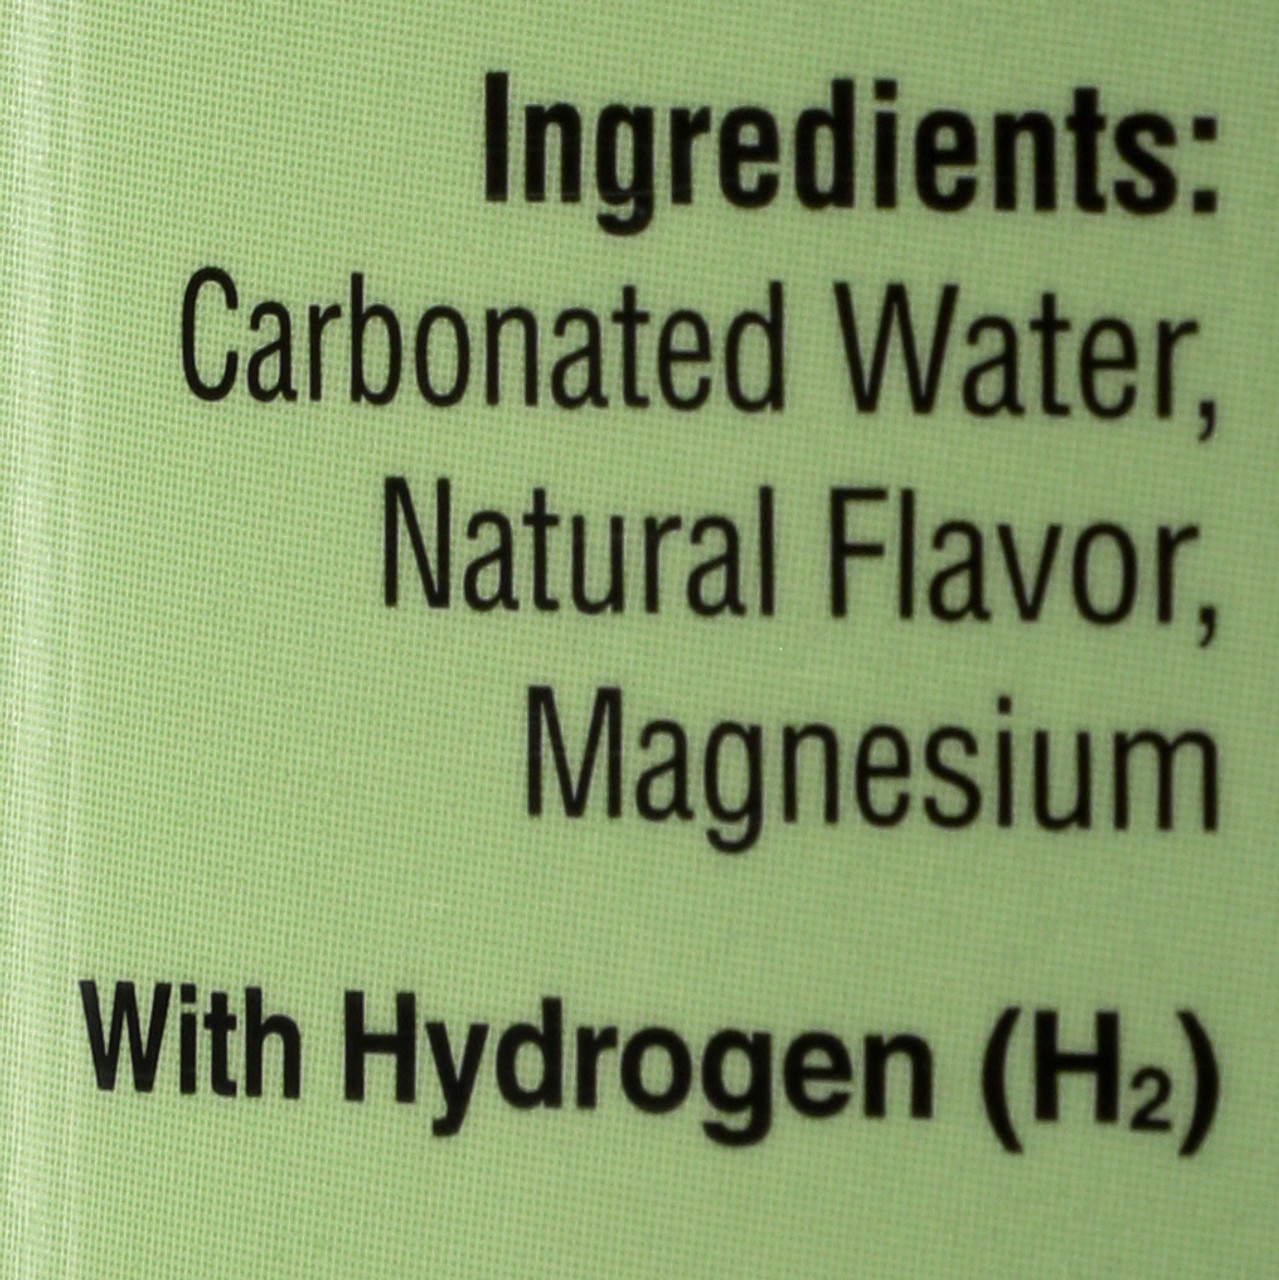 Hydrogen Infused Sparkling Water Lemon Lime 12oz